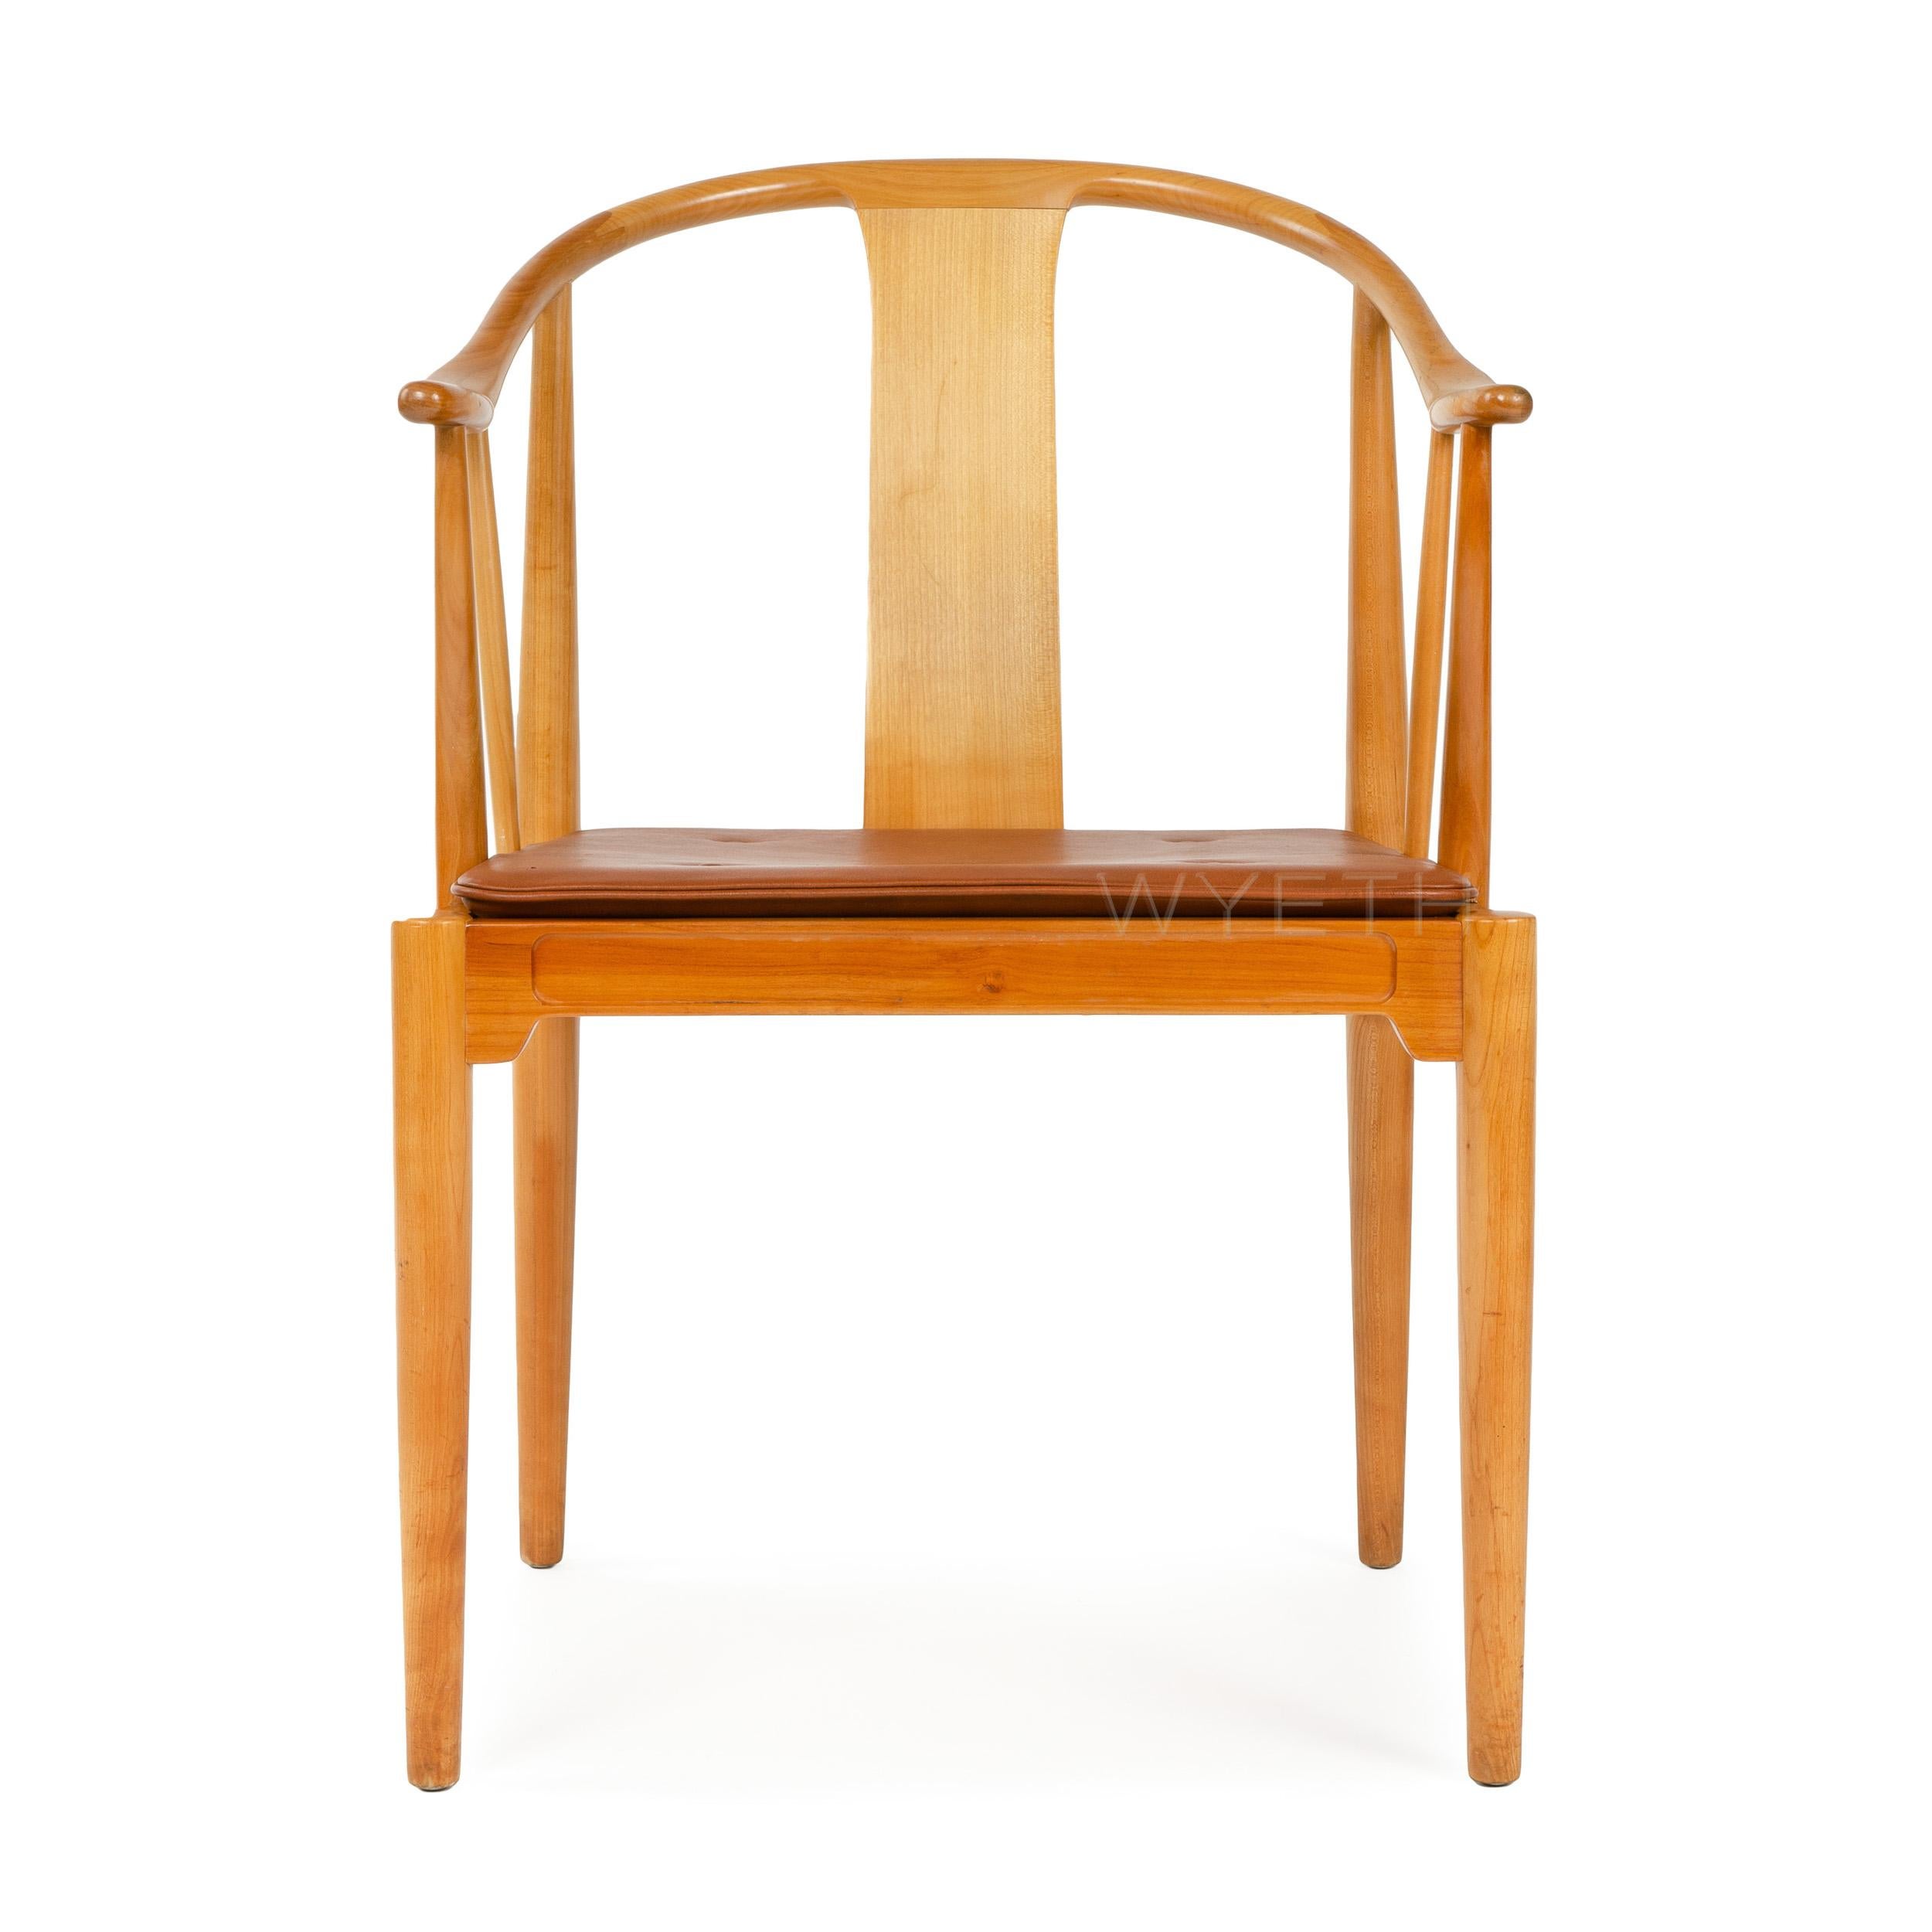 Der chinesische Stuhl, entworfen von Hans Wegner, hergestellt von Fritz Hansen. Gestell aus Kirschholz mit geschwungener Rücken- und Armlehne und einem Sitzkissen aus Naturleder. Entworfen 1943, hergestellt in den 1950er Jahren in Dänemark.